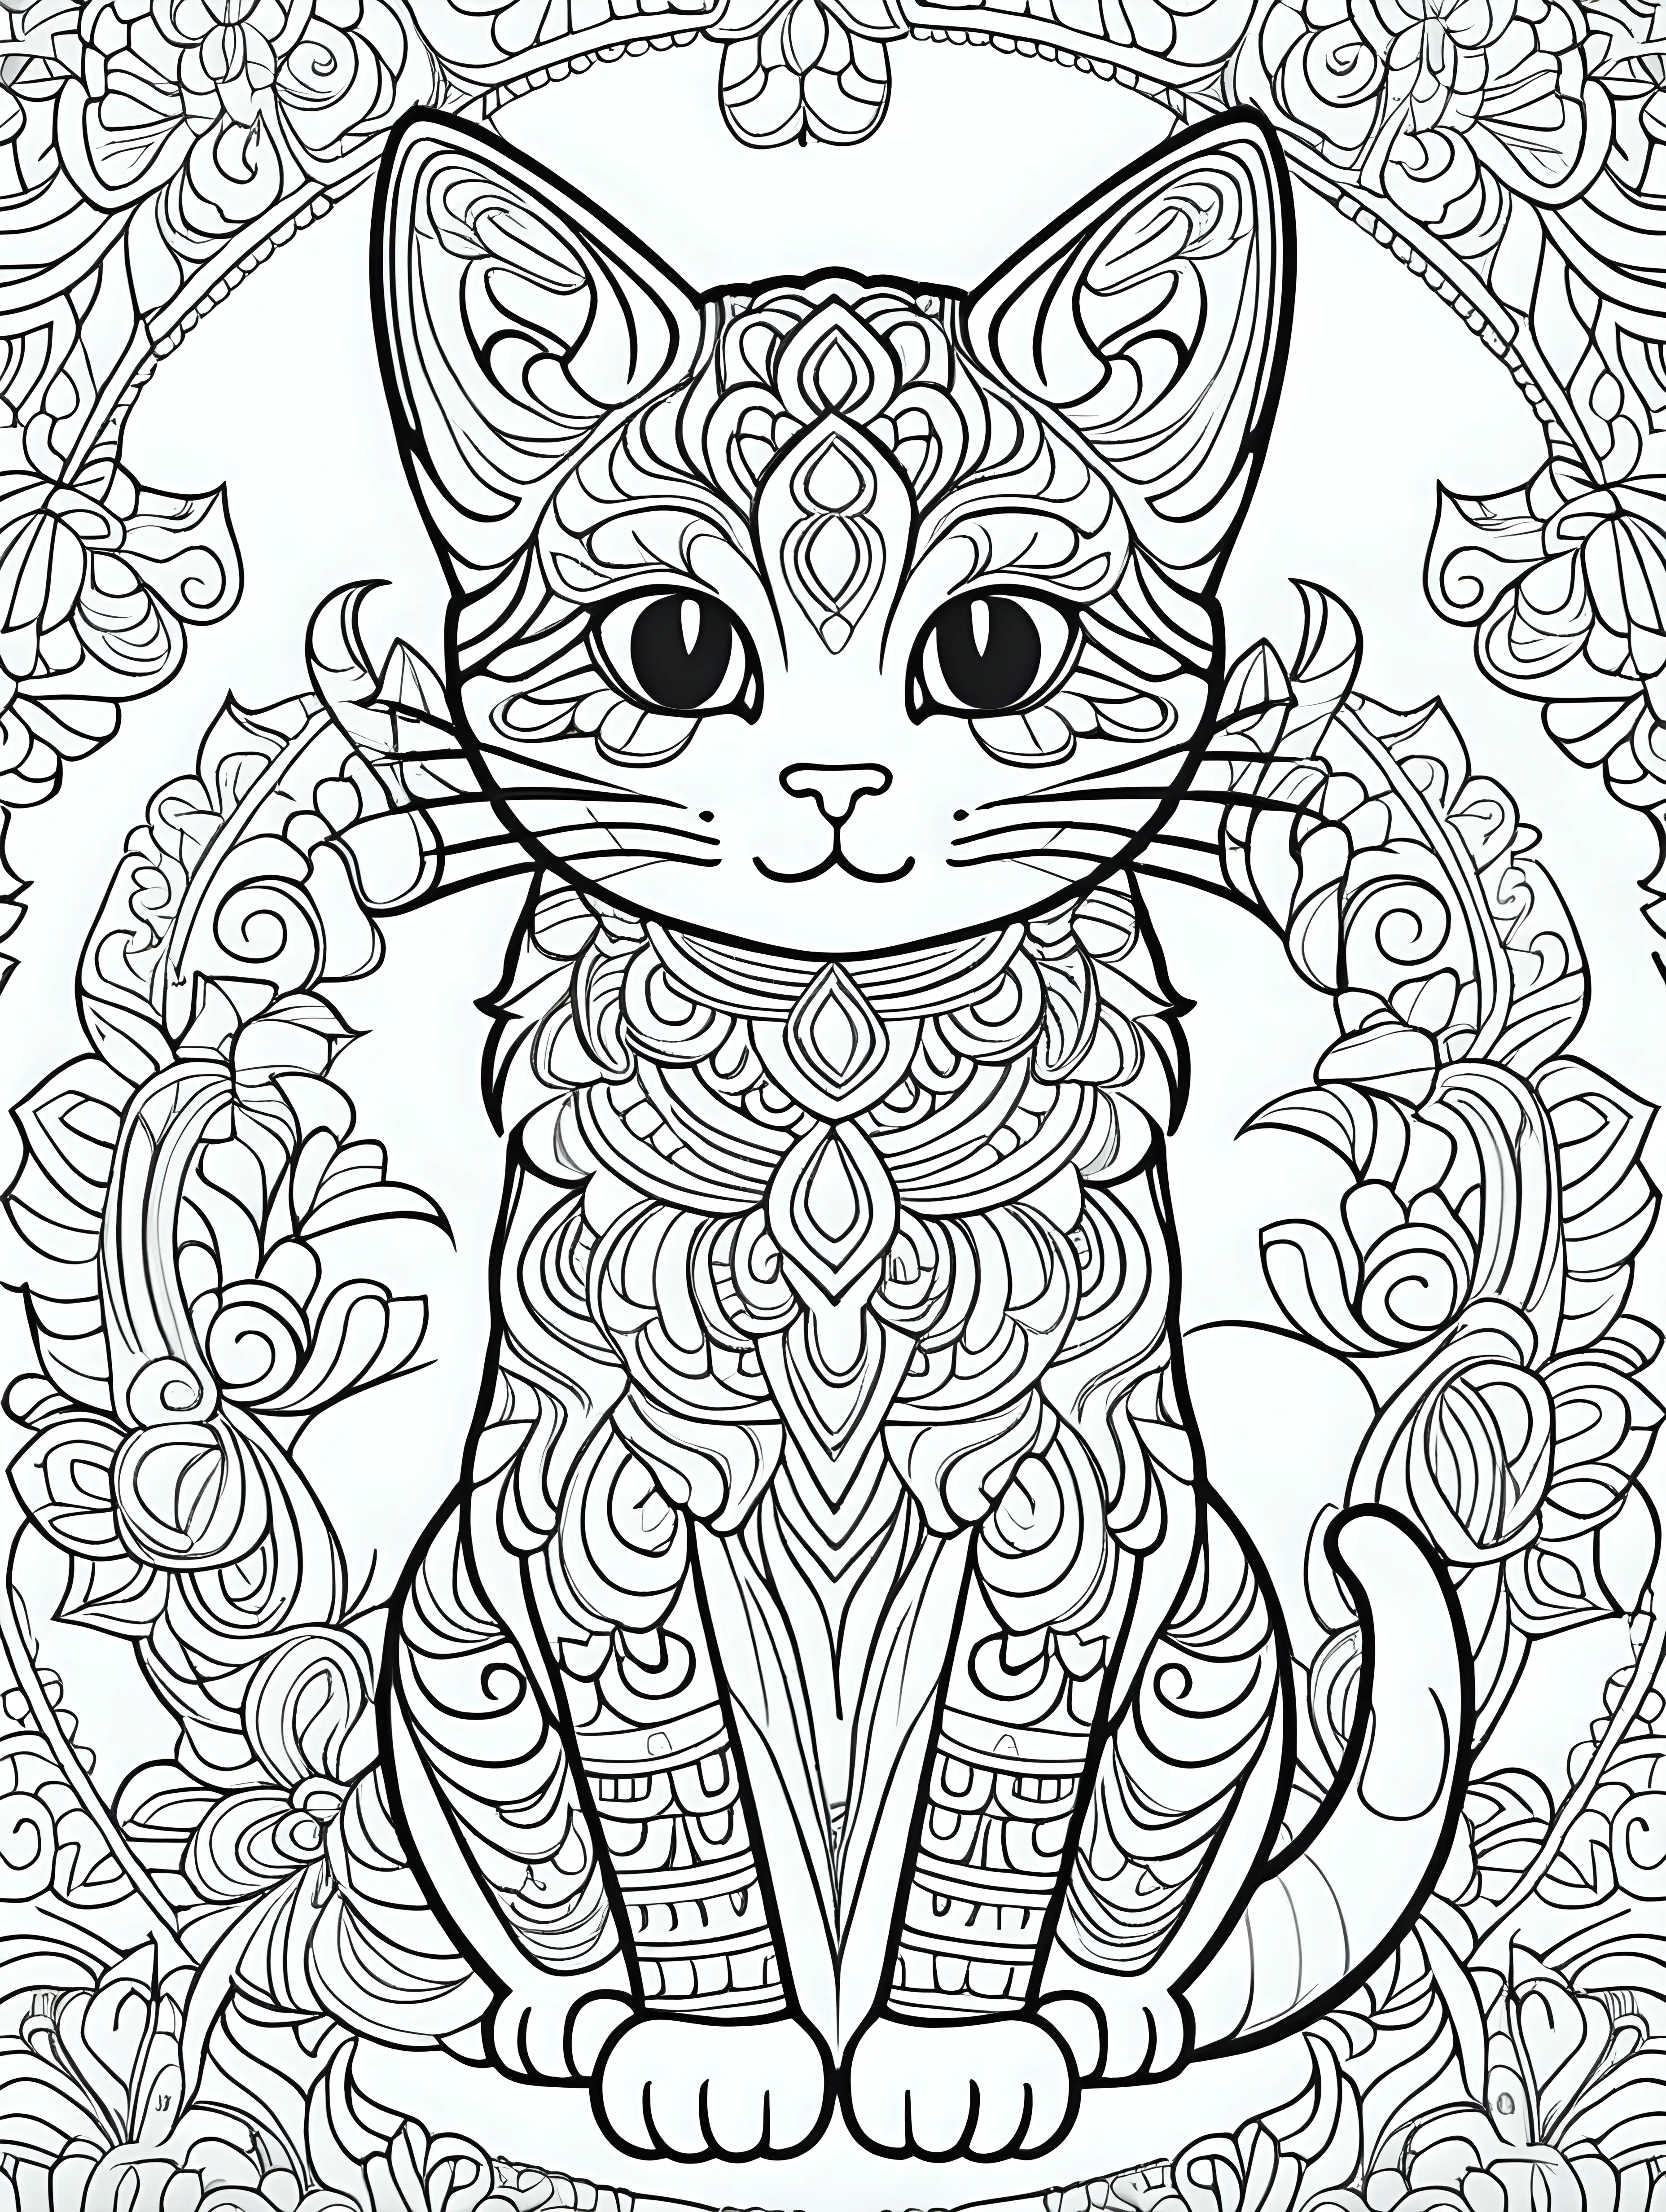 mandala cat cartoon style for coloring book